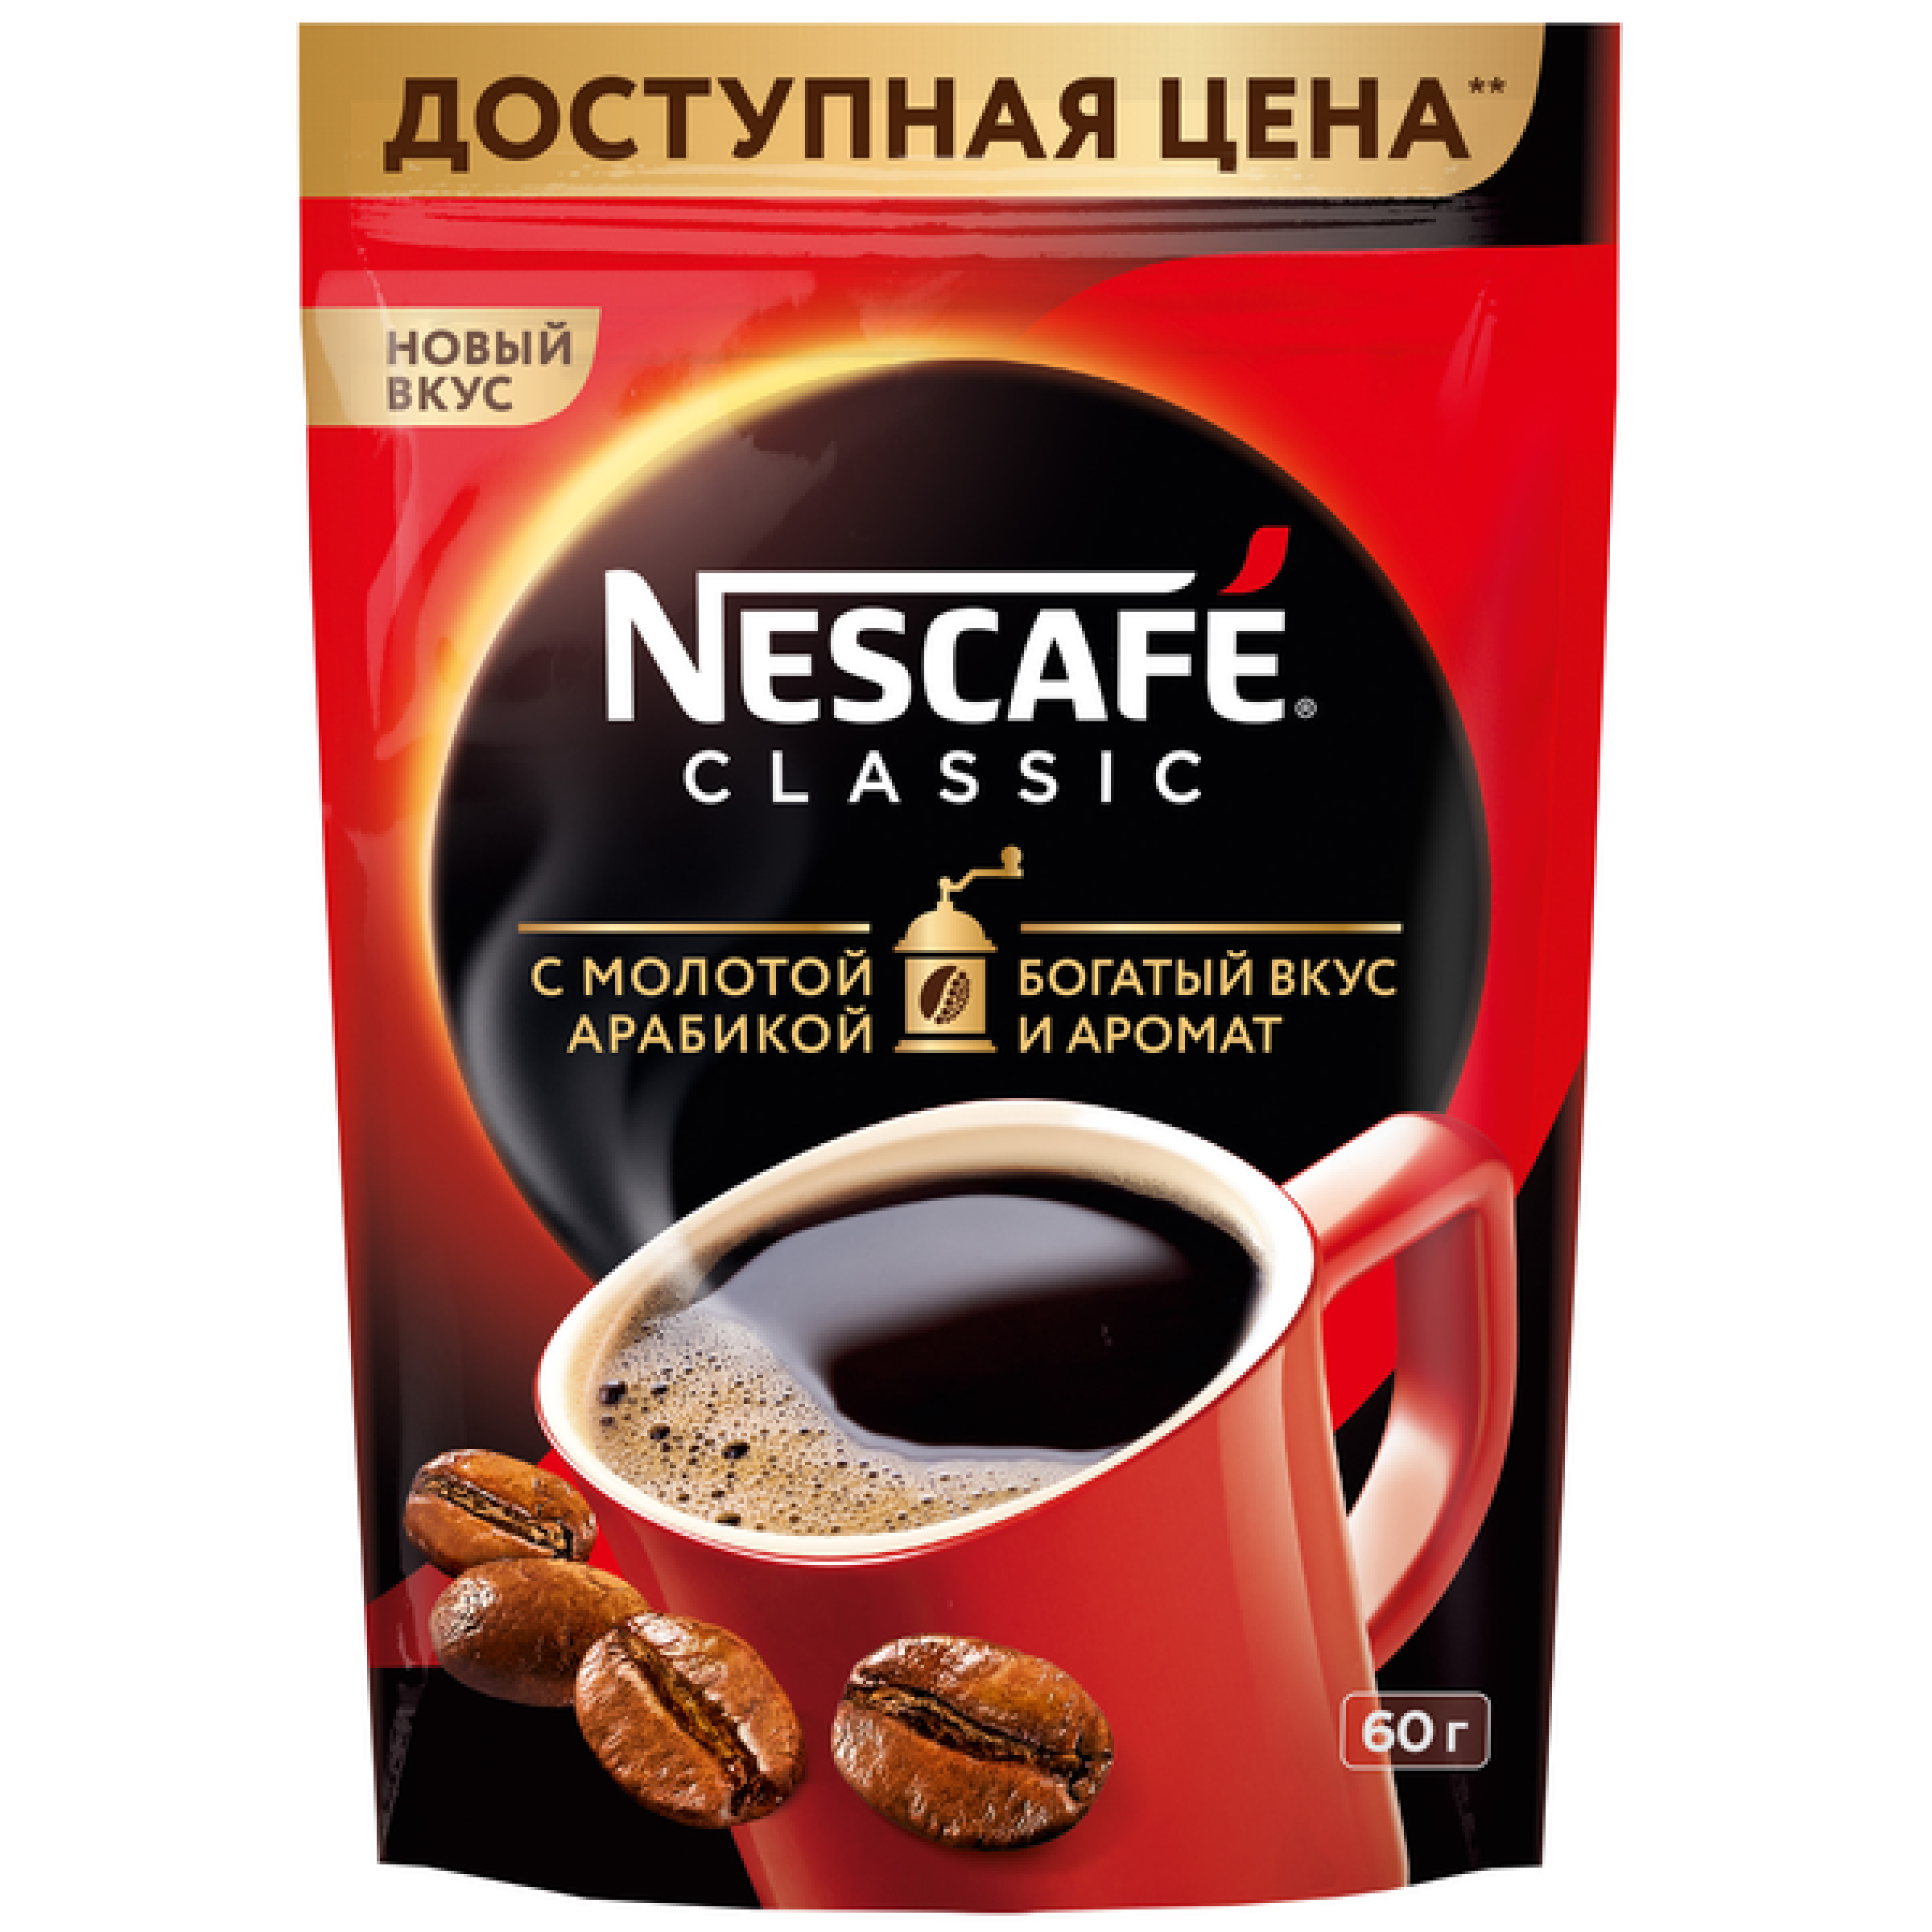 NESCAFE CLASSIC растворимый кофе с добавлением натурального жареного молотого кофе, 60 гр